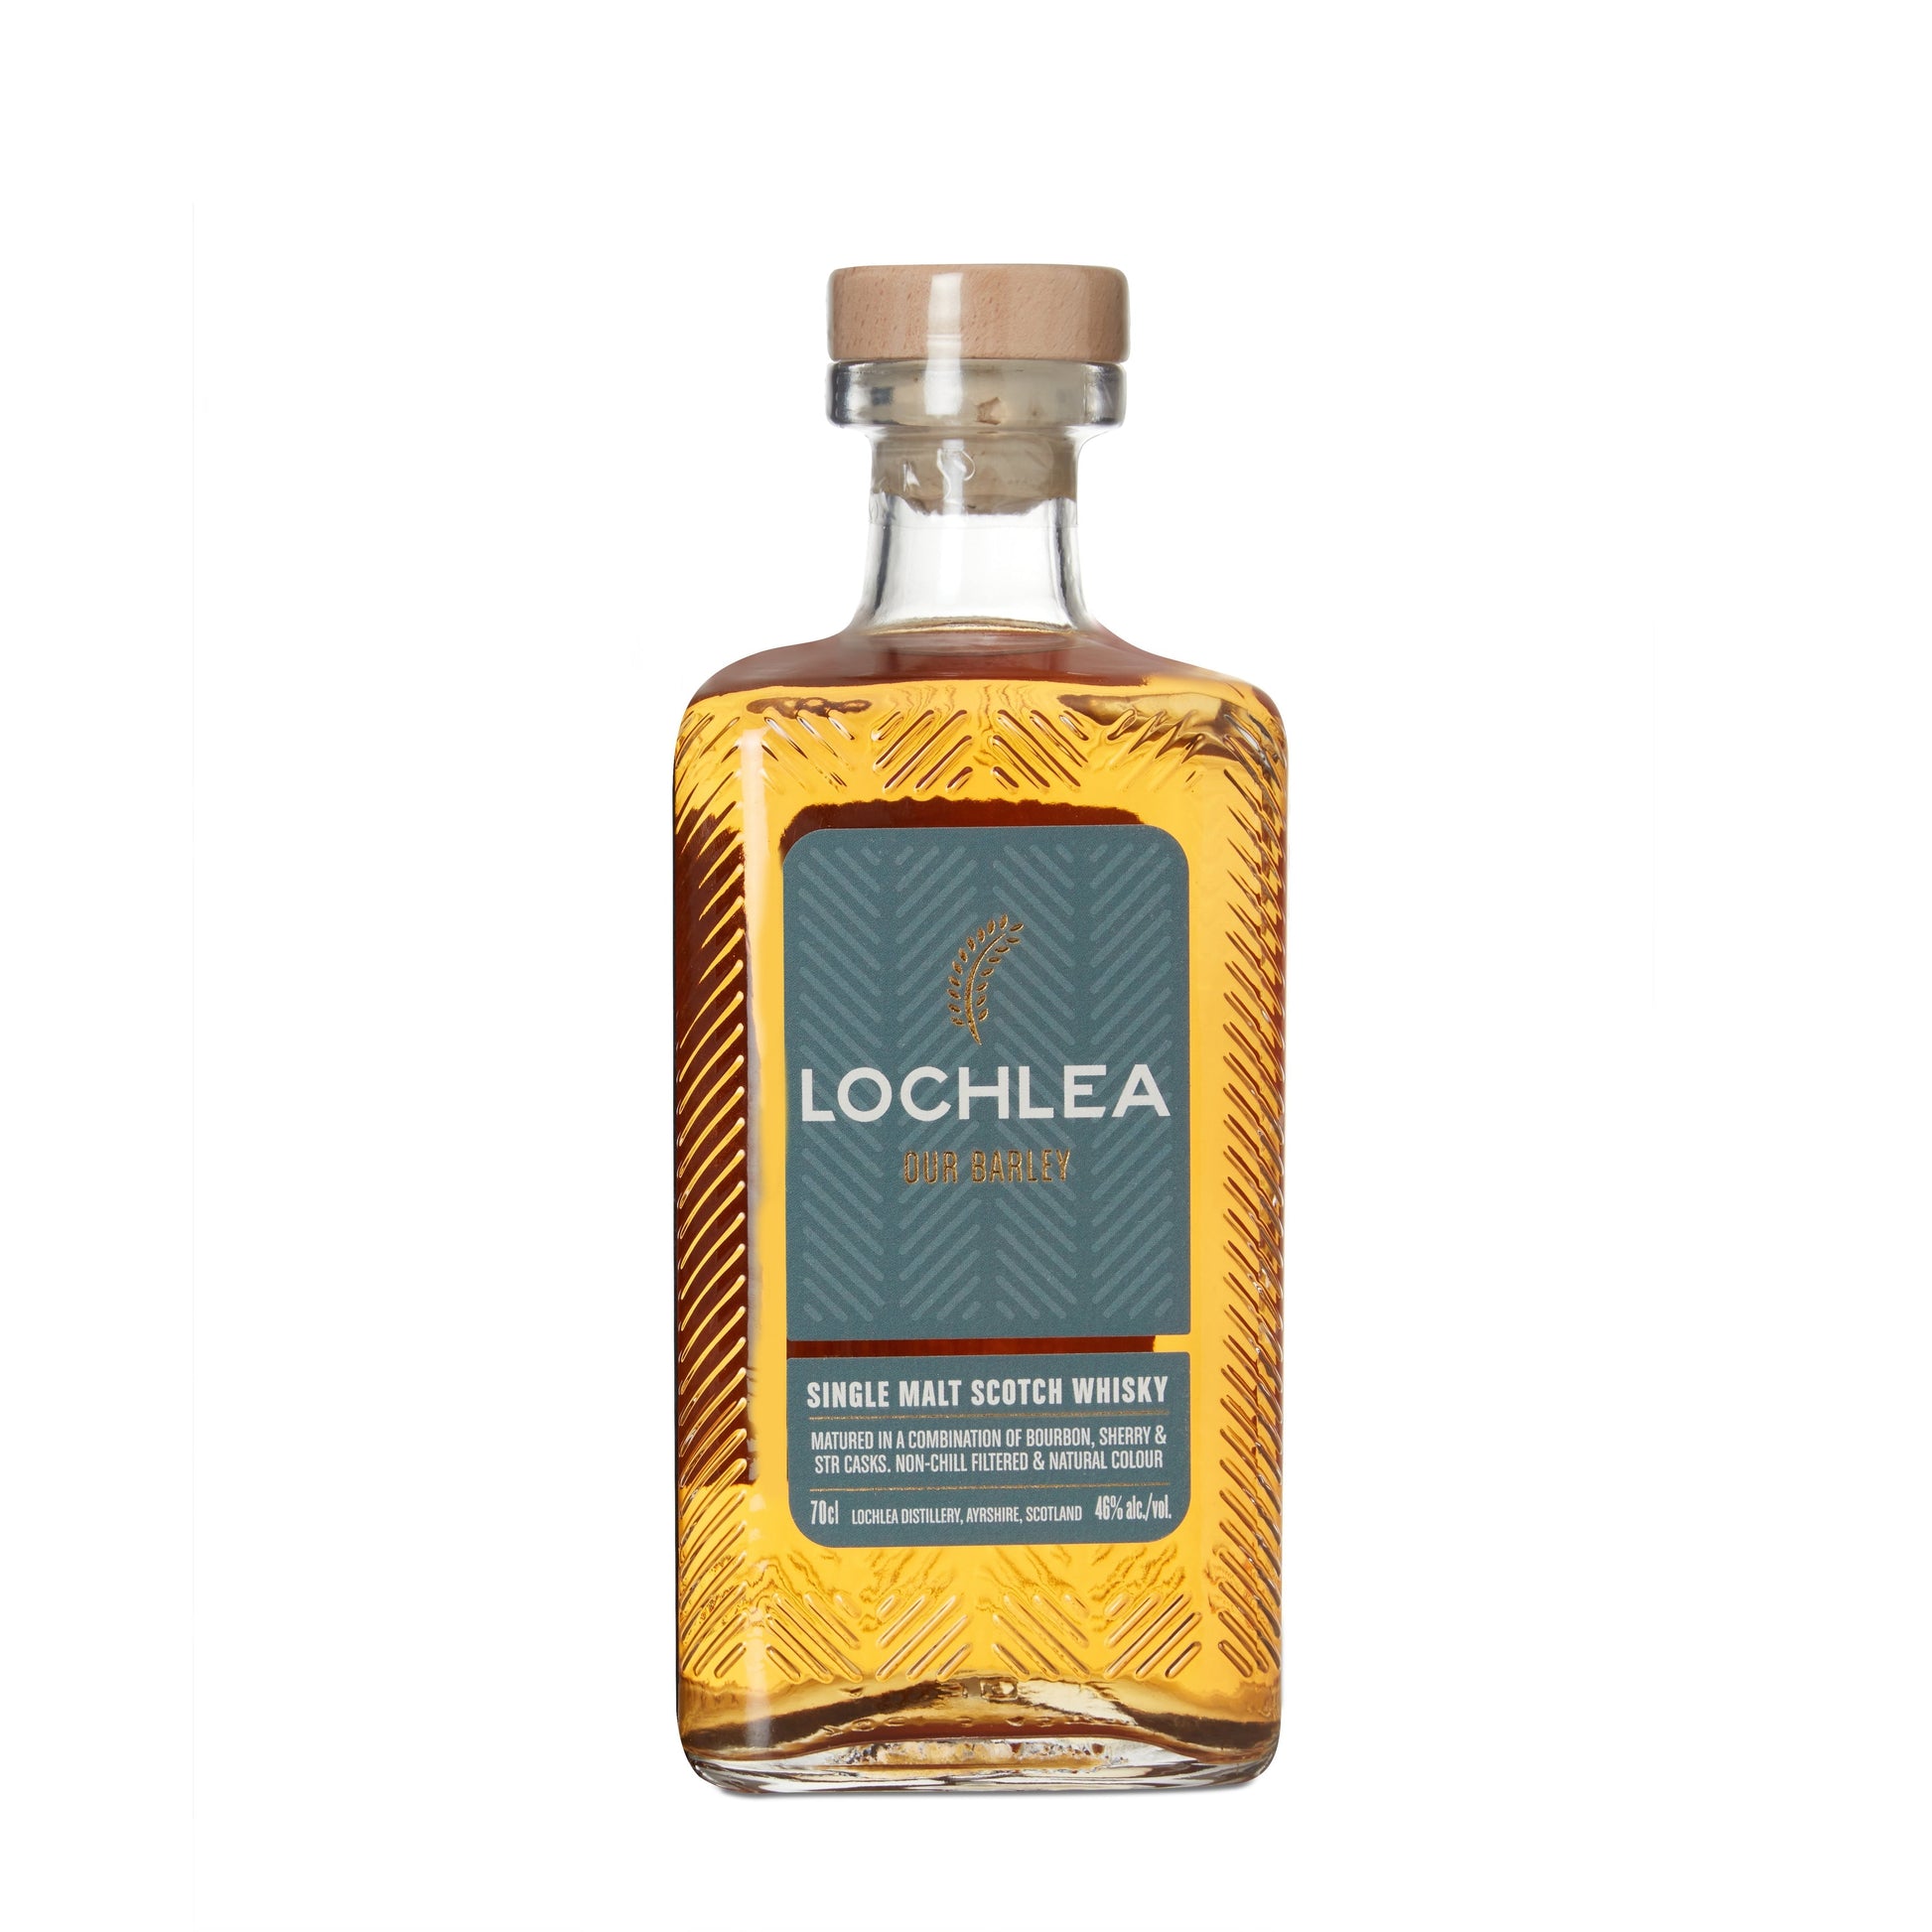 Lochlea Our Barley - Single Malt Scotch Whisky-Single Malt Scotch Whisky-5065008253013-Fountainhall Wines